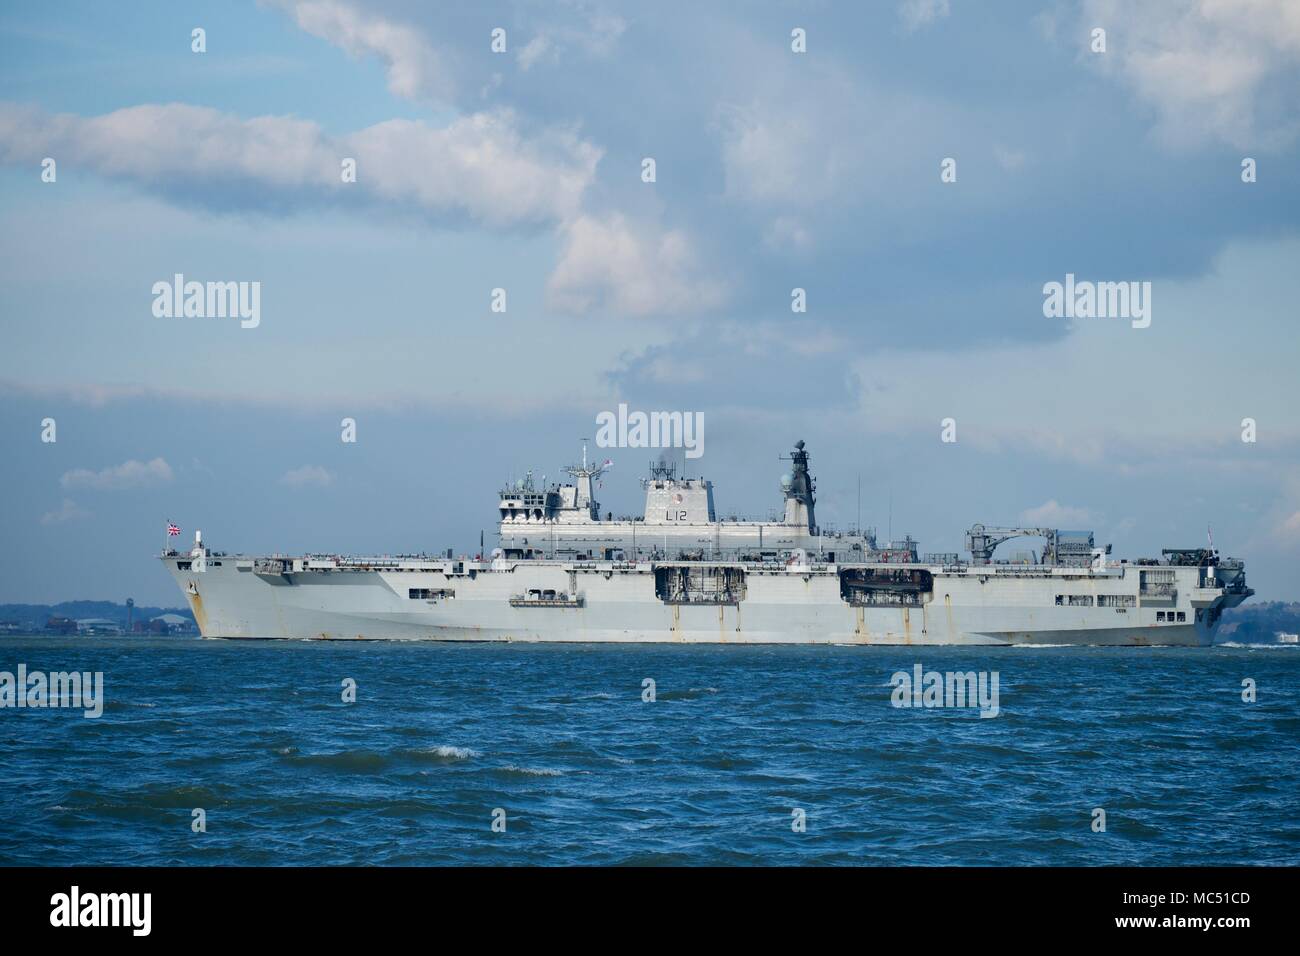 HMS Ocean (L12) de asalto anfibio,porta-helicópteros y buques insignia de la flota de la Royal Navy en el Solent justo unas semanas antes de ser retirado del servicio. Foto de stock